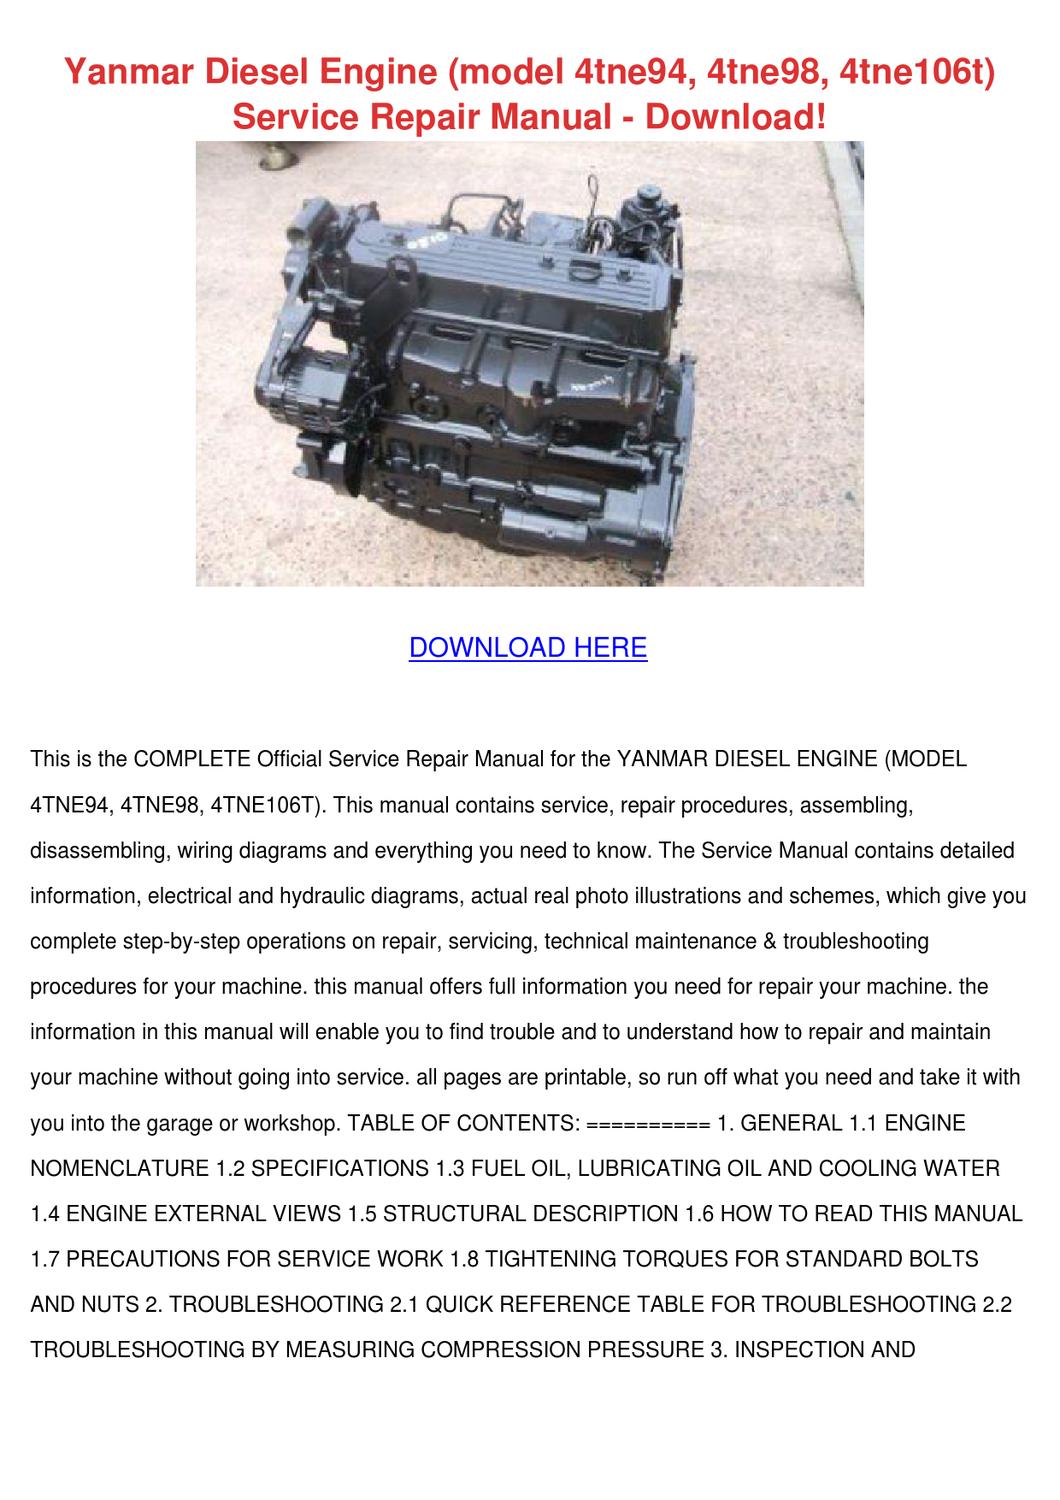 yanmar diesel engine service manual